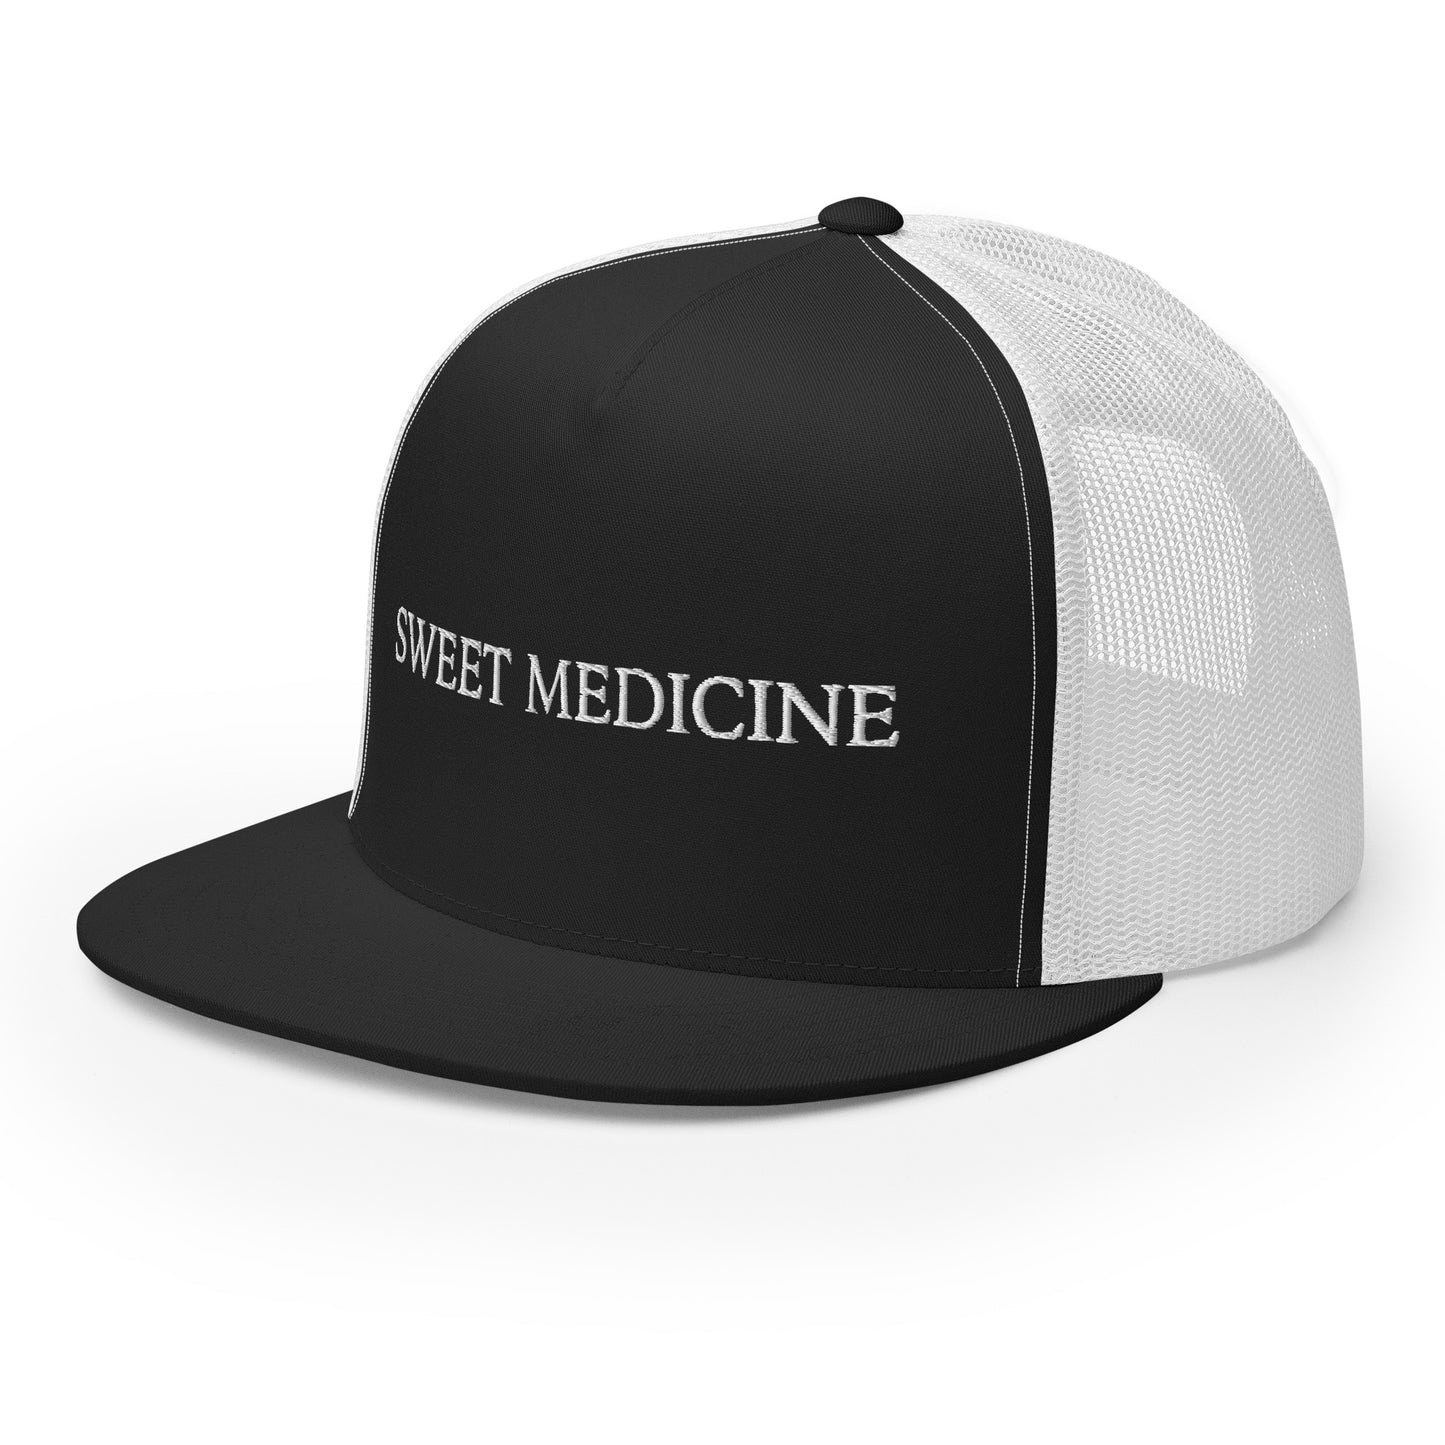 Sweet Medicine Trucker Cap